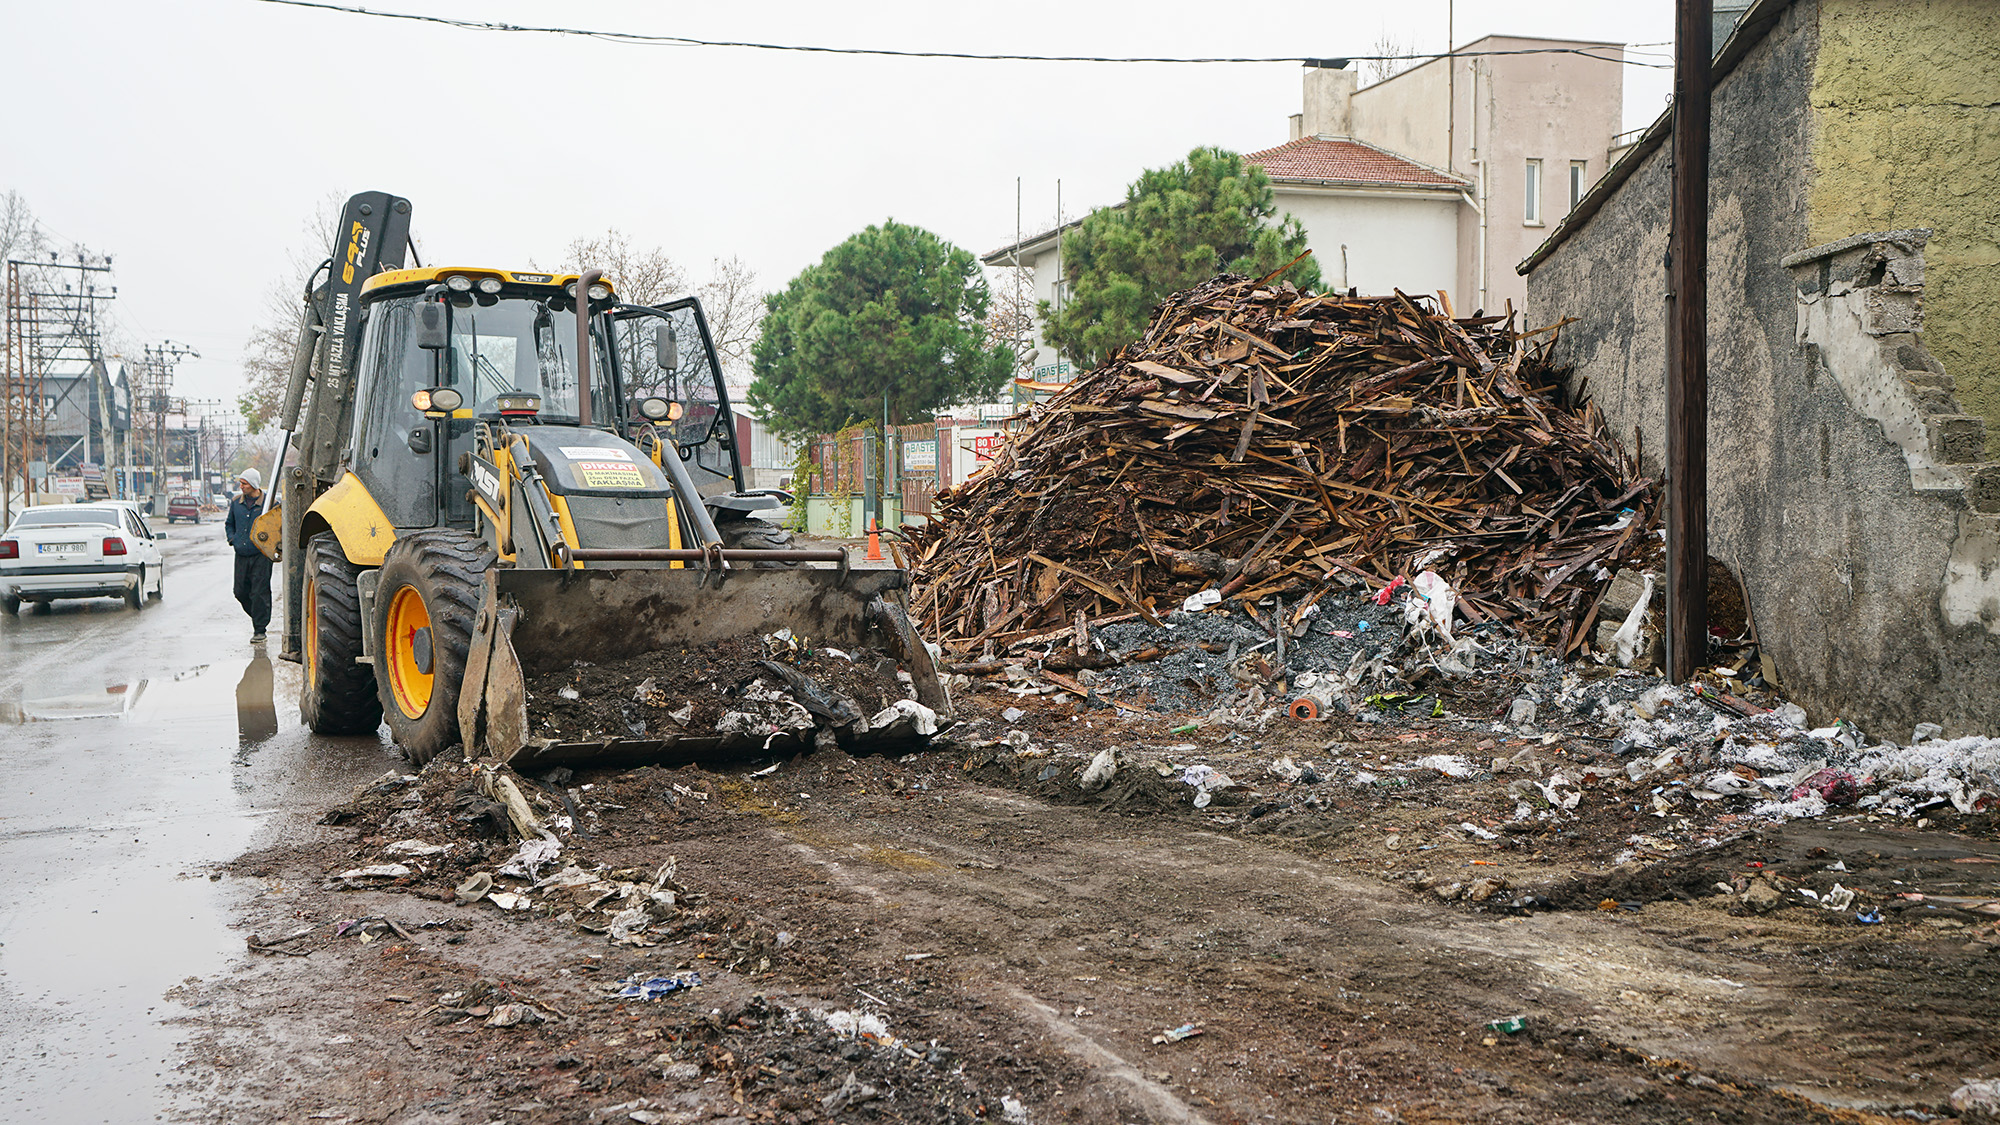 Odun Ambarları ve Küçük Sanayi Sitesi Hafriyat Atıklarından Temizleniyor